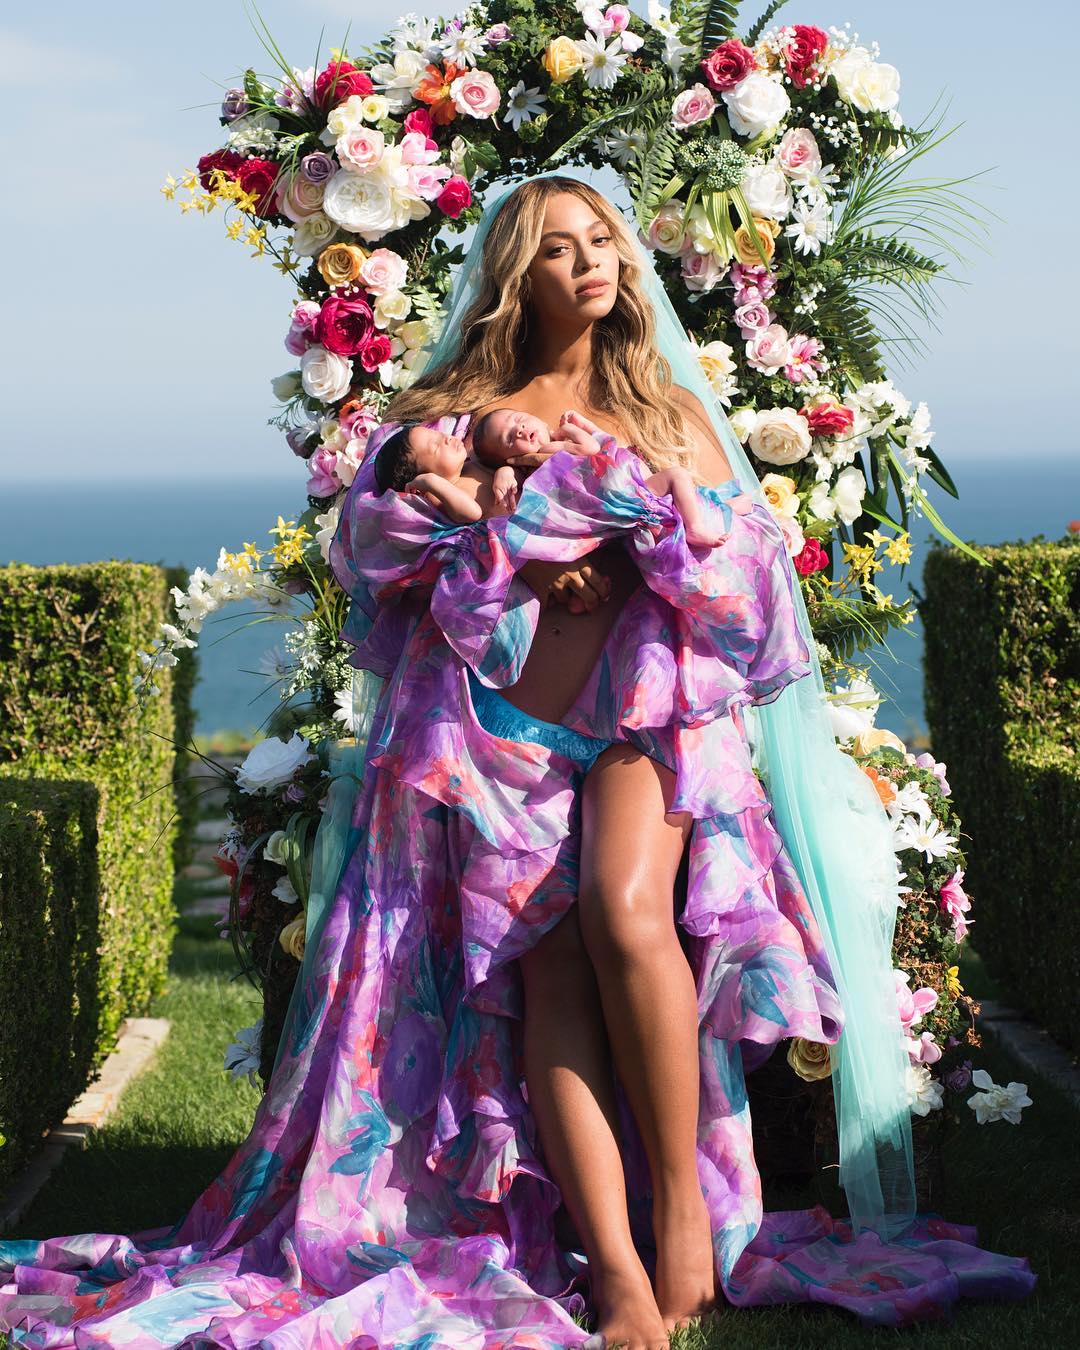 PHOTOS: Beyoncé Reveals the Carter Twins